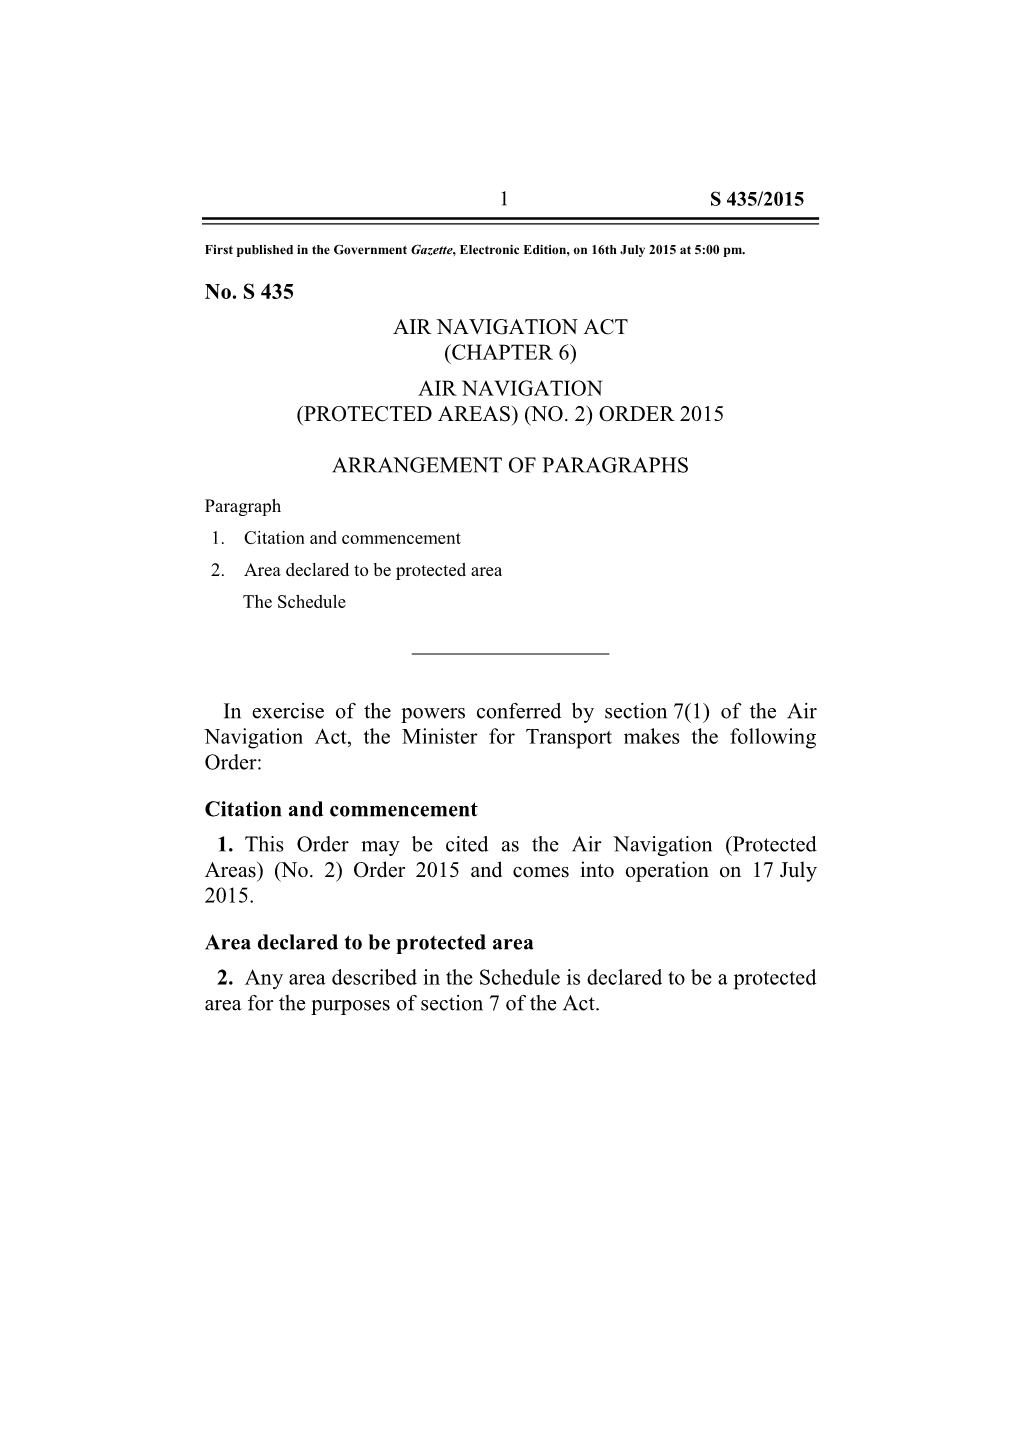 Air Navigation (Protected Areas) (No. 2) Order 2015